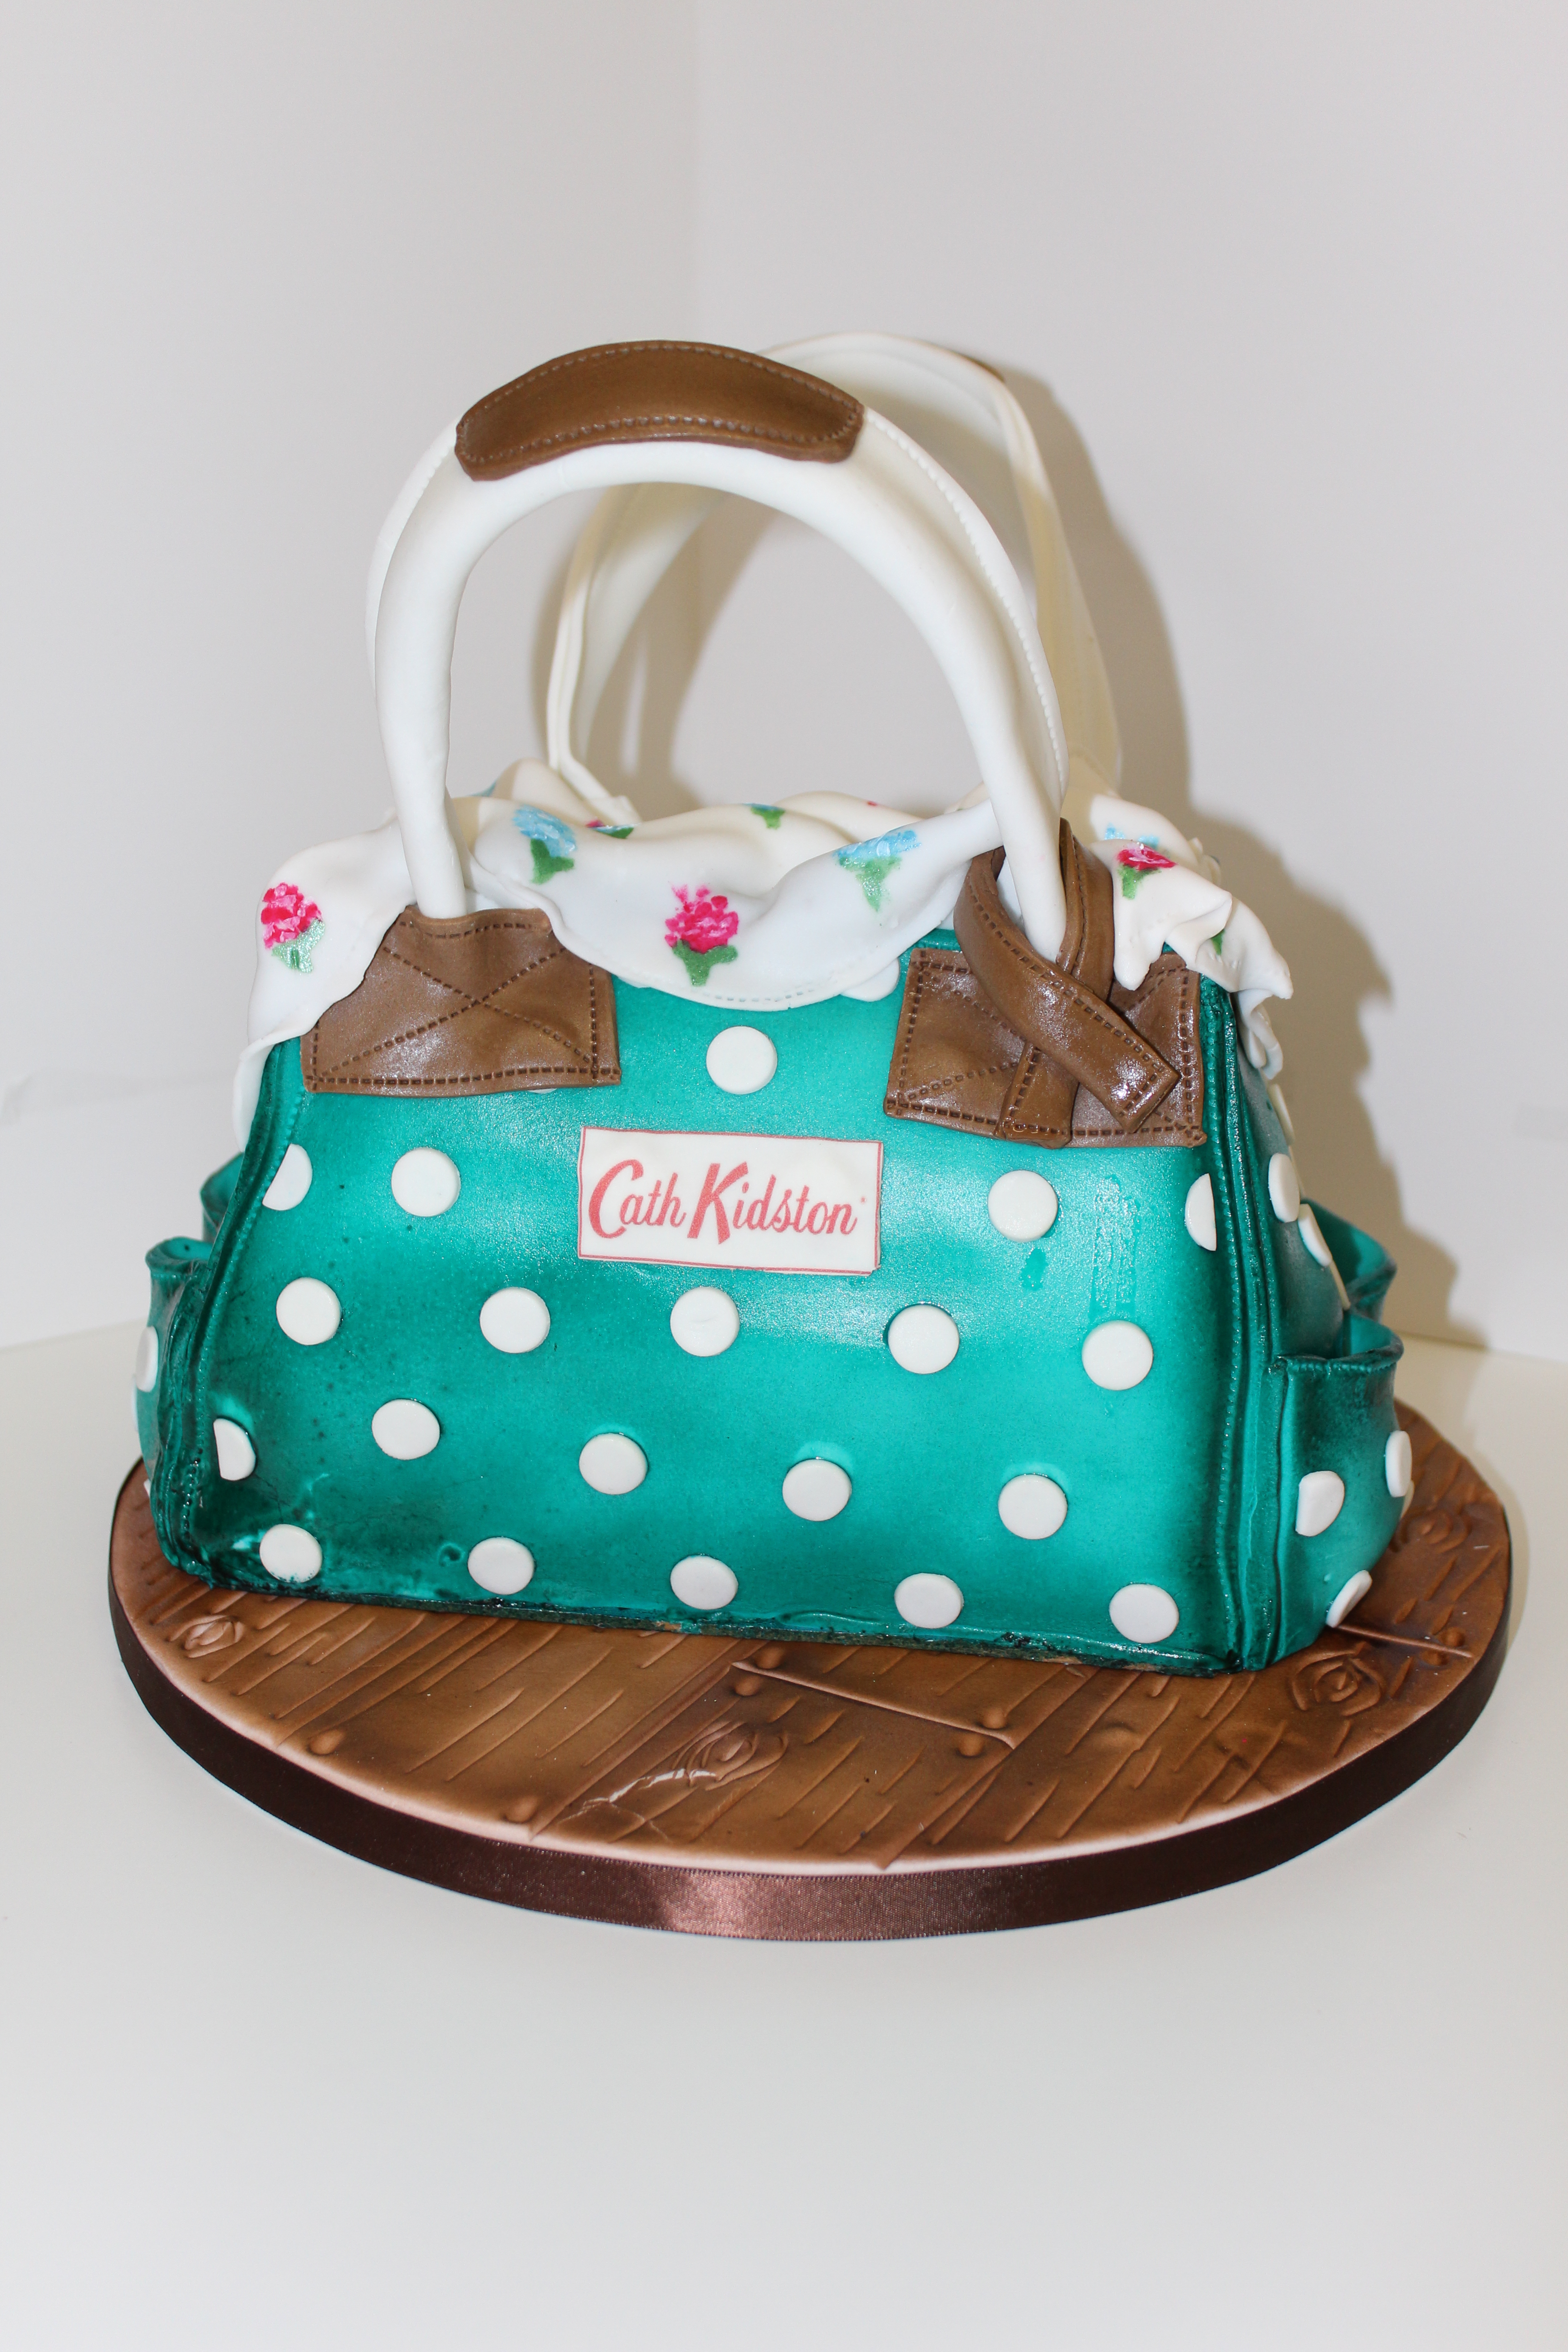 Shoe and Bag Cake - Amazing Cake Ideas